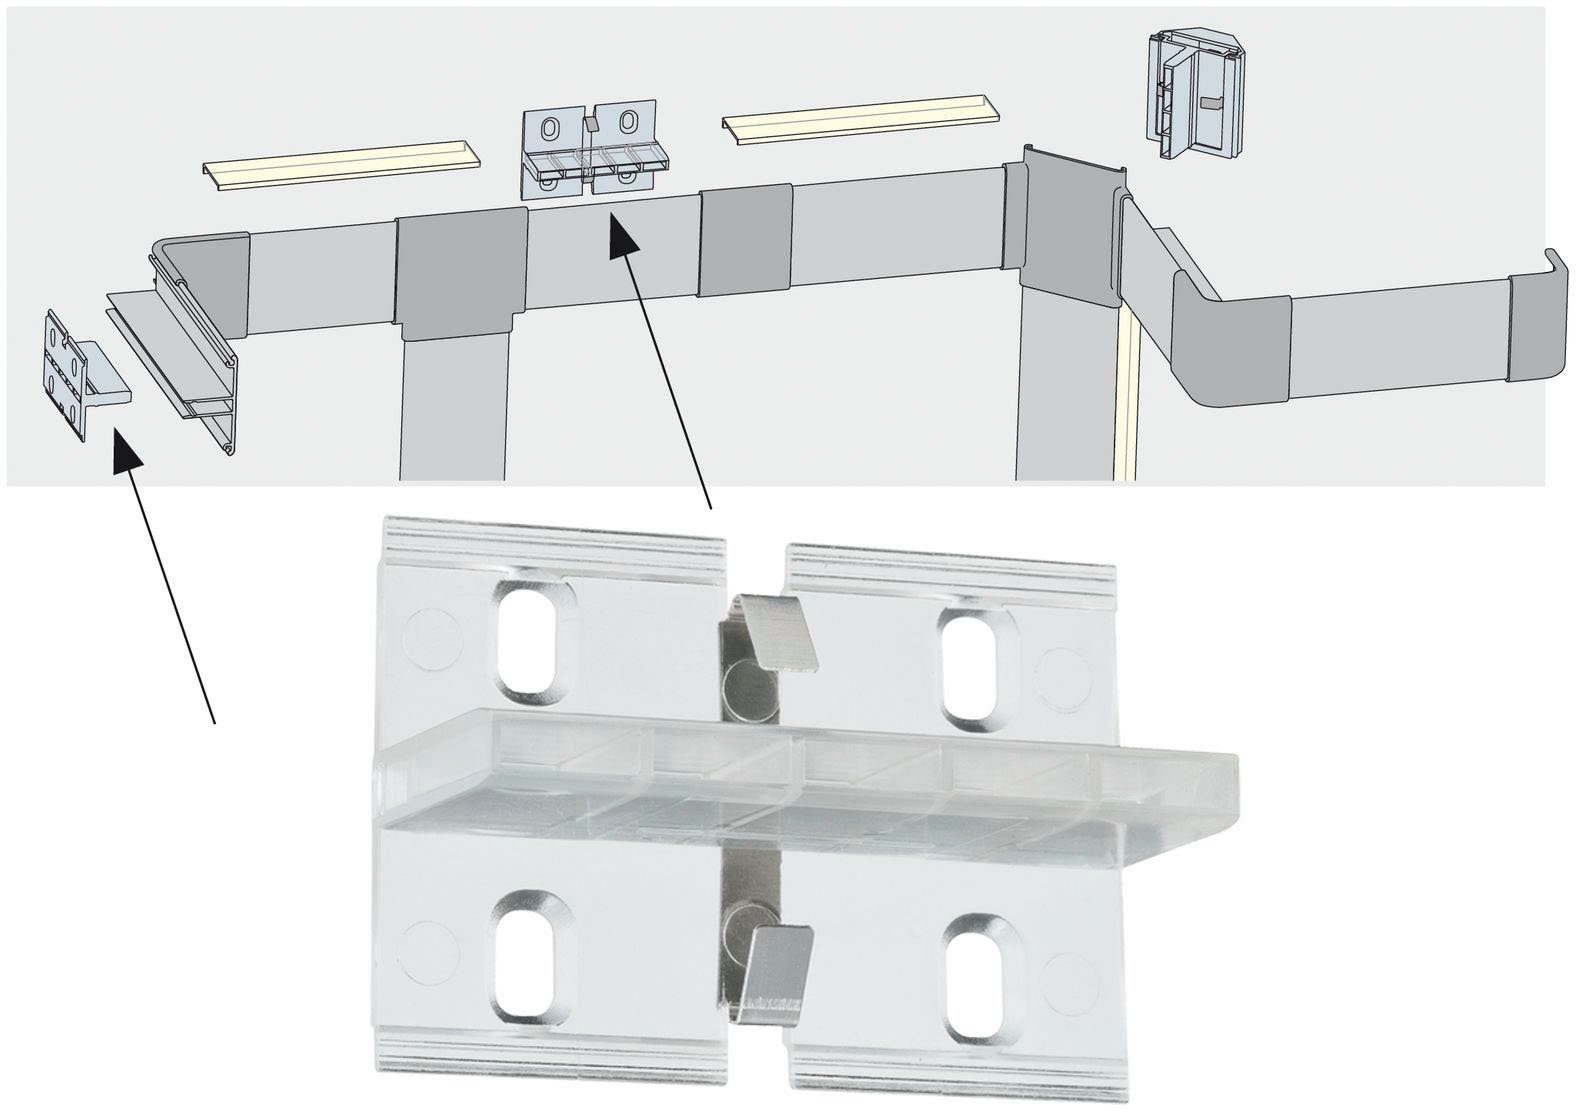 Paulmann LED-Streifen Duo Profil Set 100 cm inkl. Clips und Diffusor, Nicht  vergessen: Passende LED-Strips gleich mitbestellen!